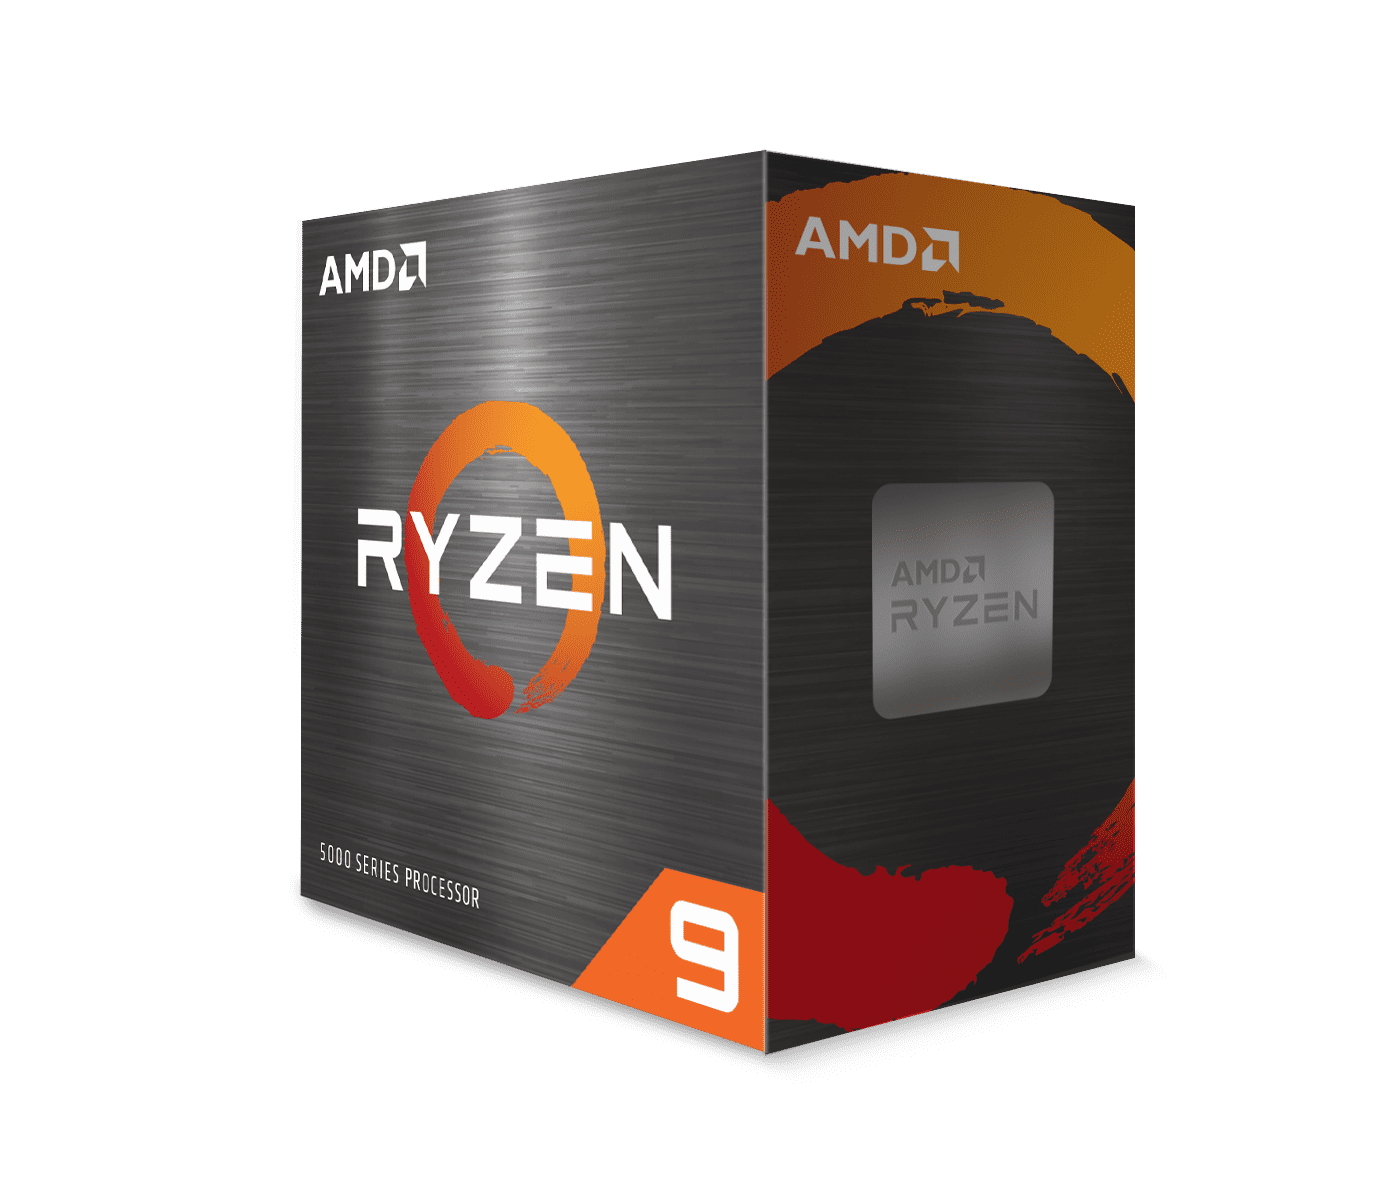 AMD Ryzen 9 5900X 3.7 GHz 12-Core AM4 Unlocked Desktop Processor $325.73 + Free Shipping